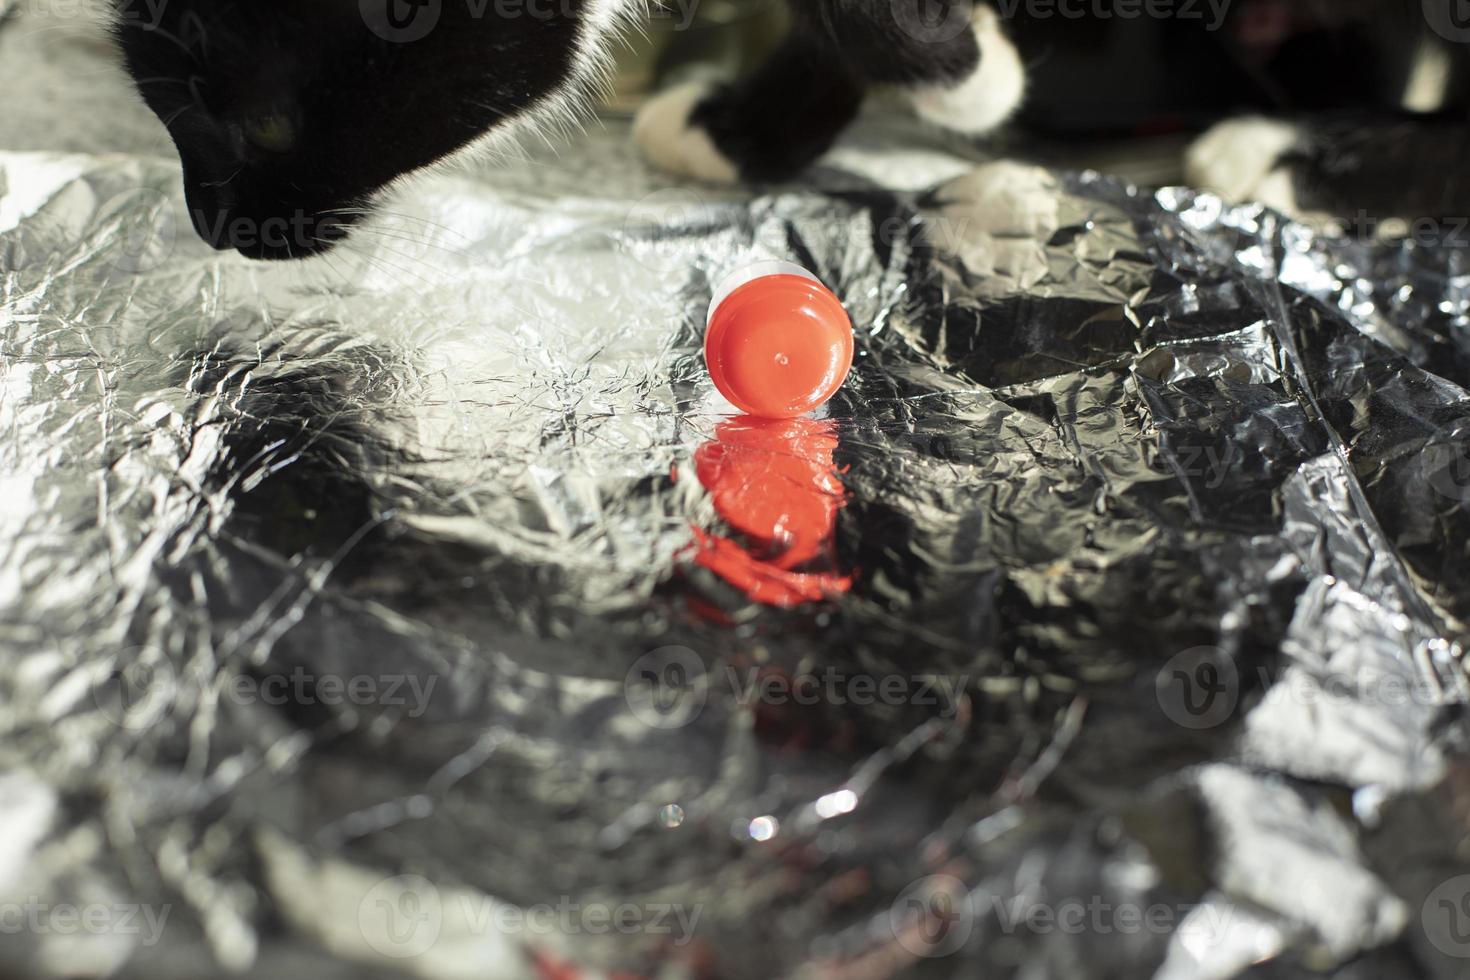 tampa vermelha repousa sobre papel alumínio e passadeiras. reflexão do objeto na camada de metal. foto